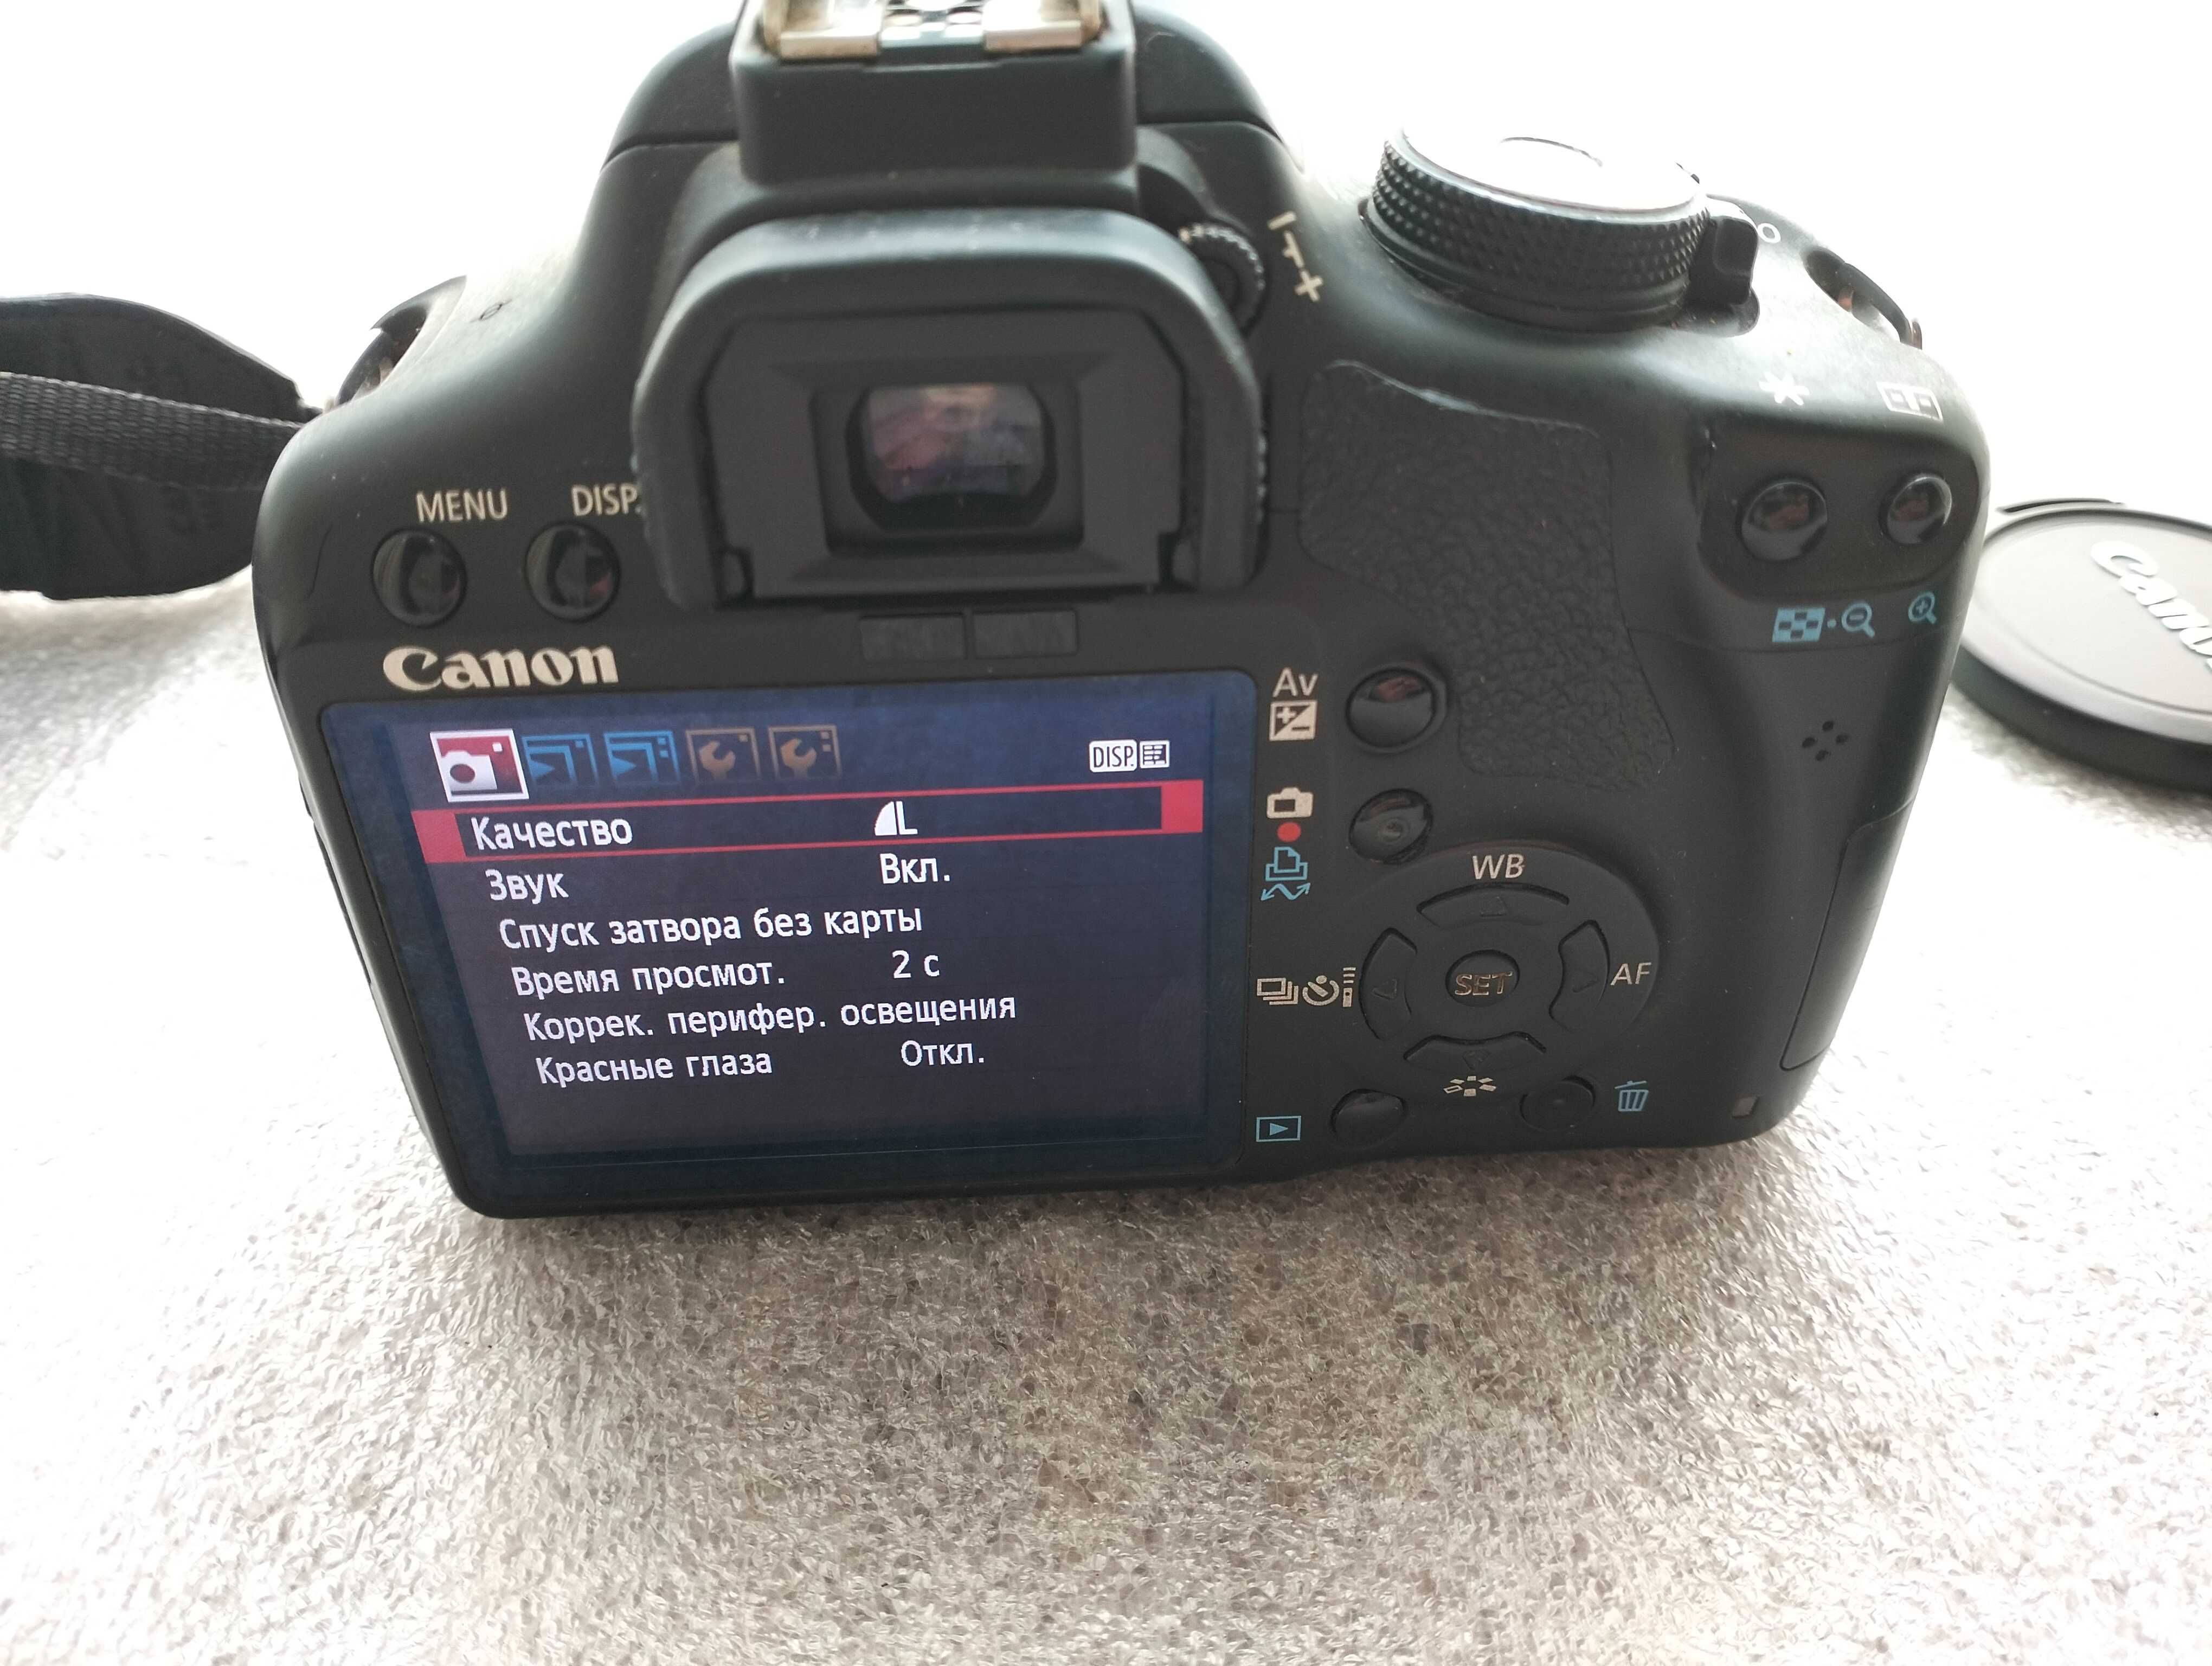 Зеркалка Canon 500 D с комплектом